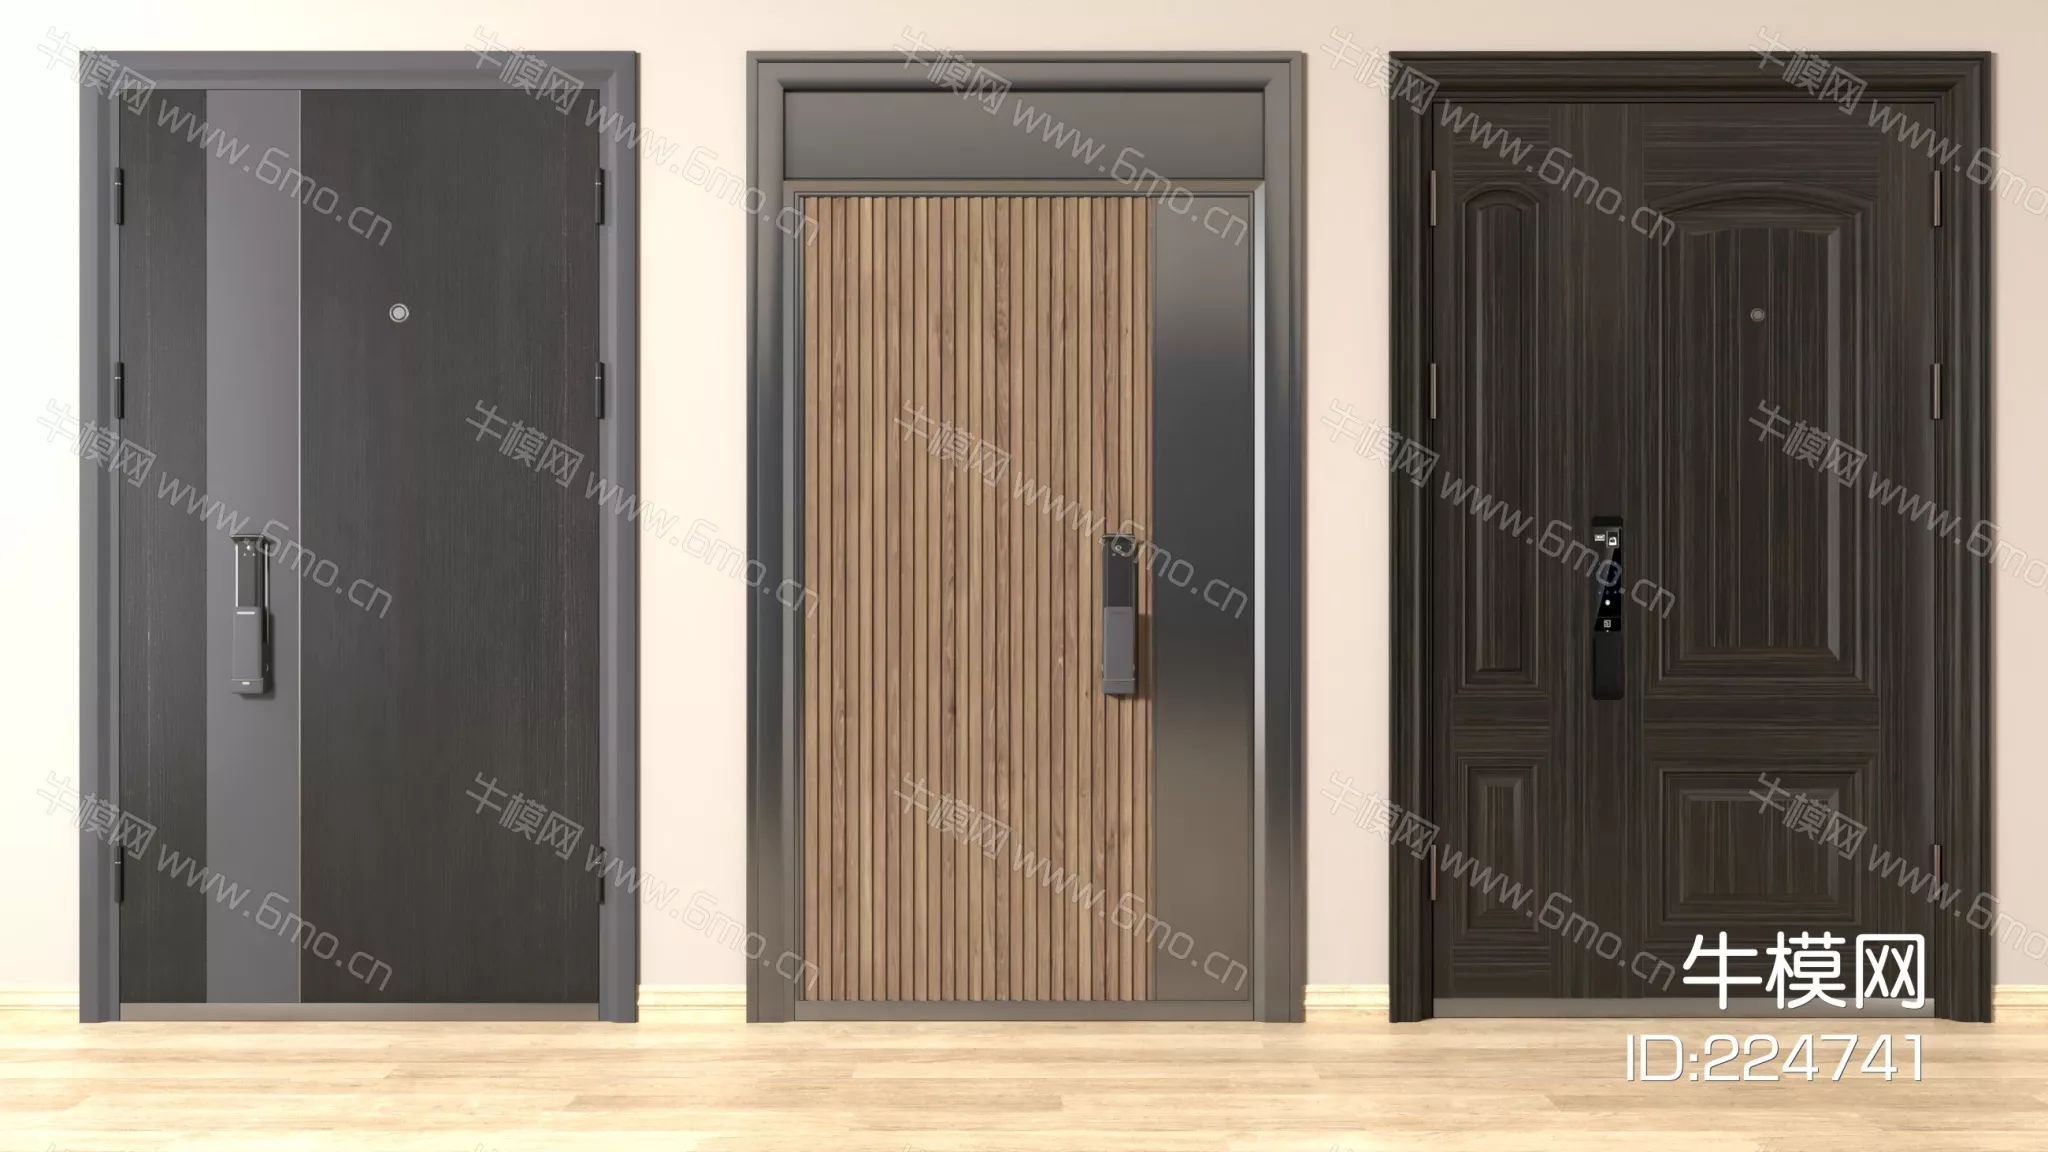 MODERN DOOR AND WINDOWS - SKETCHUP 3D MODEL - VRAY - 224741